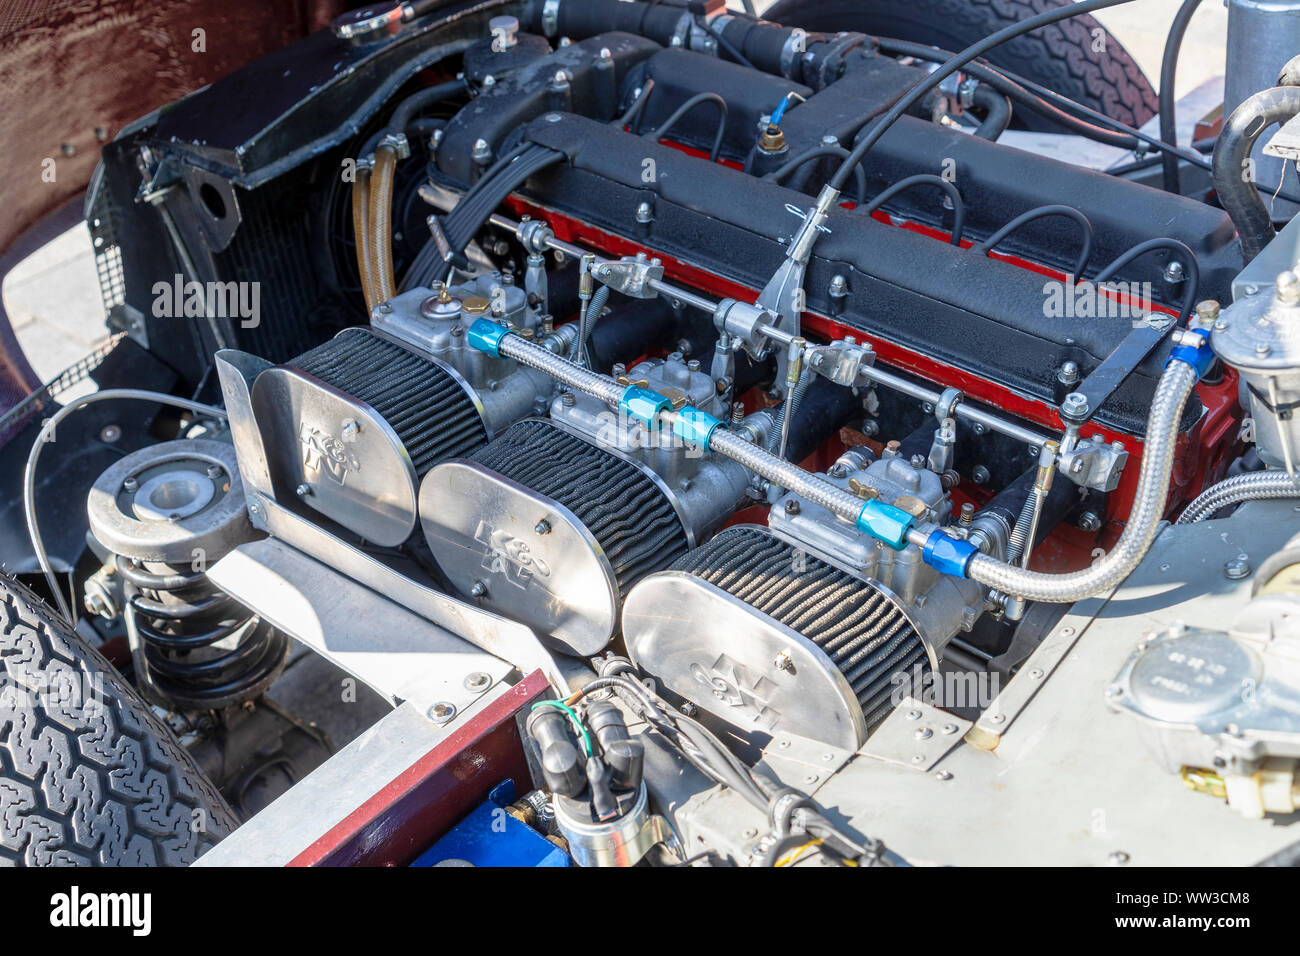 Klassische gerade 6 Zylinder Leistung Aston Martin Motor mit Weber Vergasern und K&N Luftfilter eingebaut Stockfoto